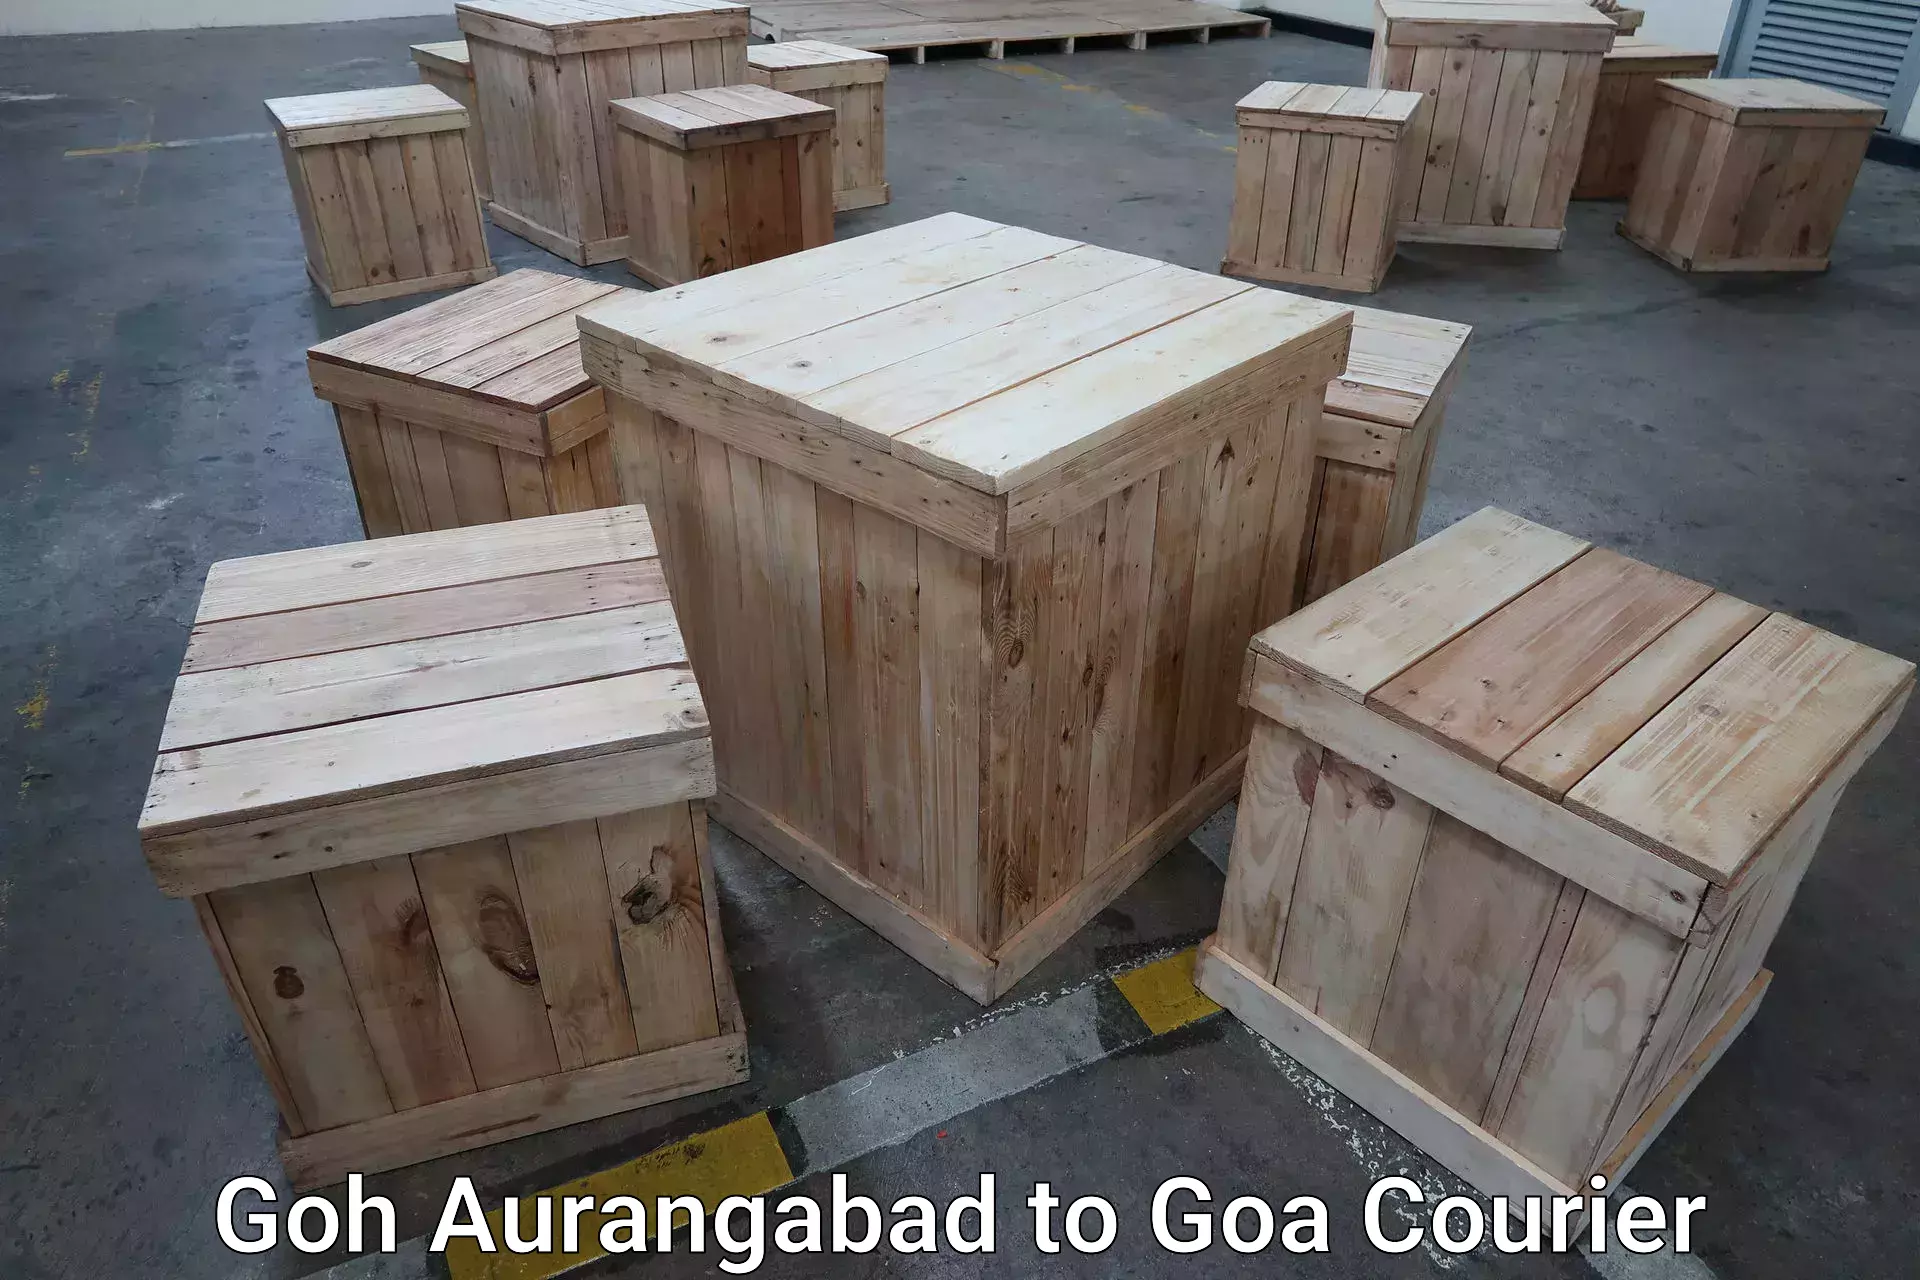 Express luggage delivery Goh Aurangabad to Margao